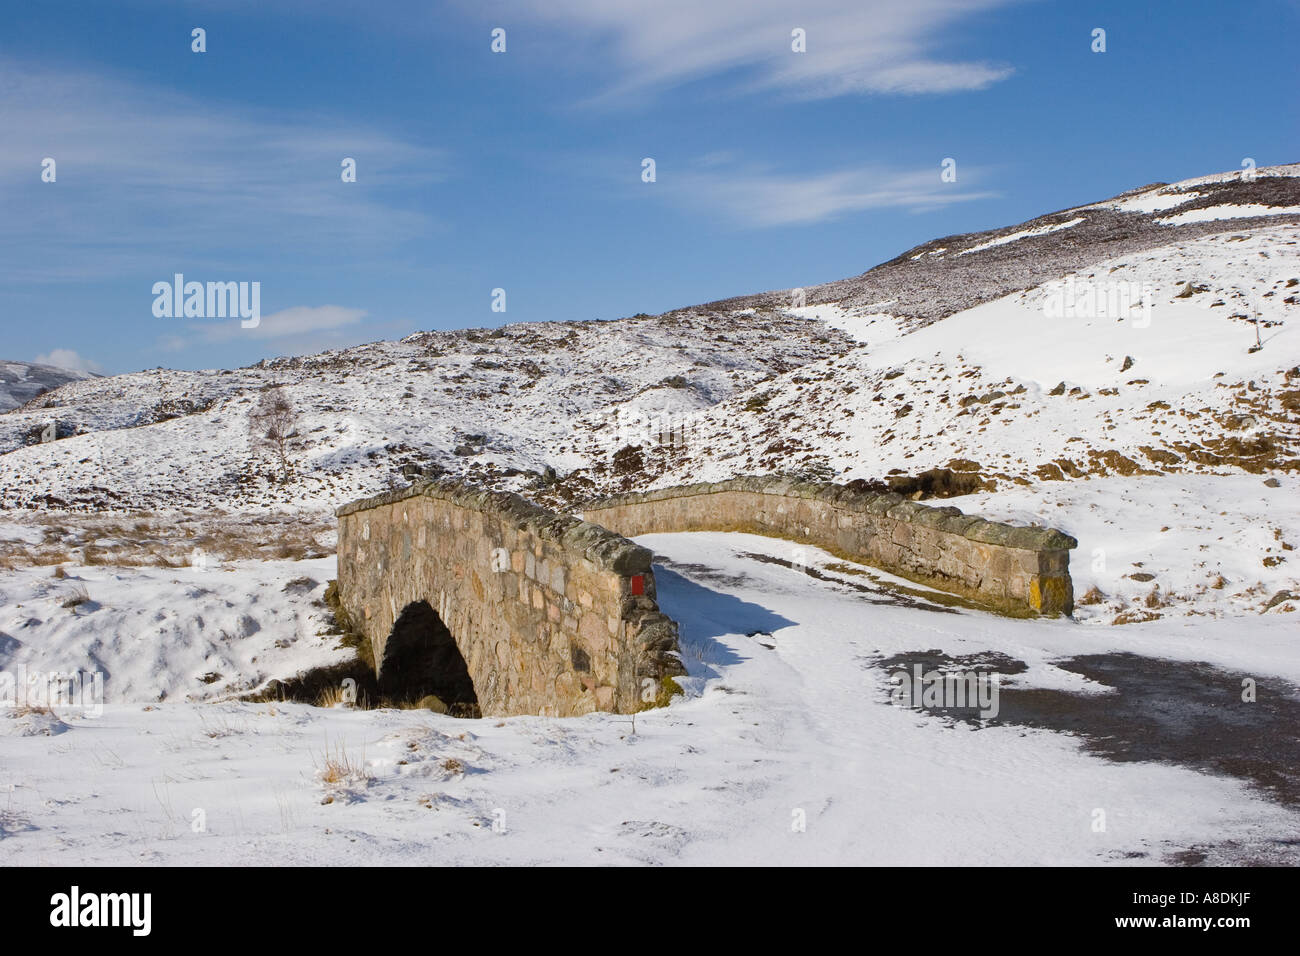 Scène d'hiver écossaise - petit pont en pierre ancienne sur la route Gairnshiel route militaire Highlands sur la route de Cockbridge, Écosse, Royaume-Uni Banque D'Images